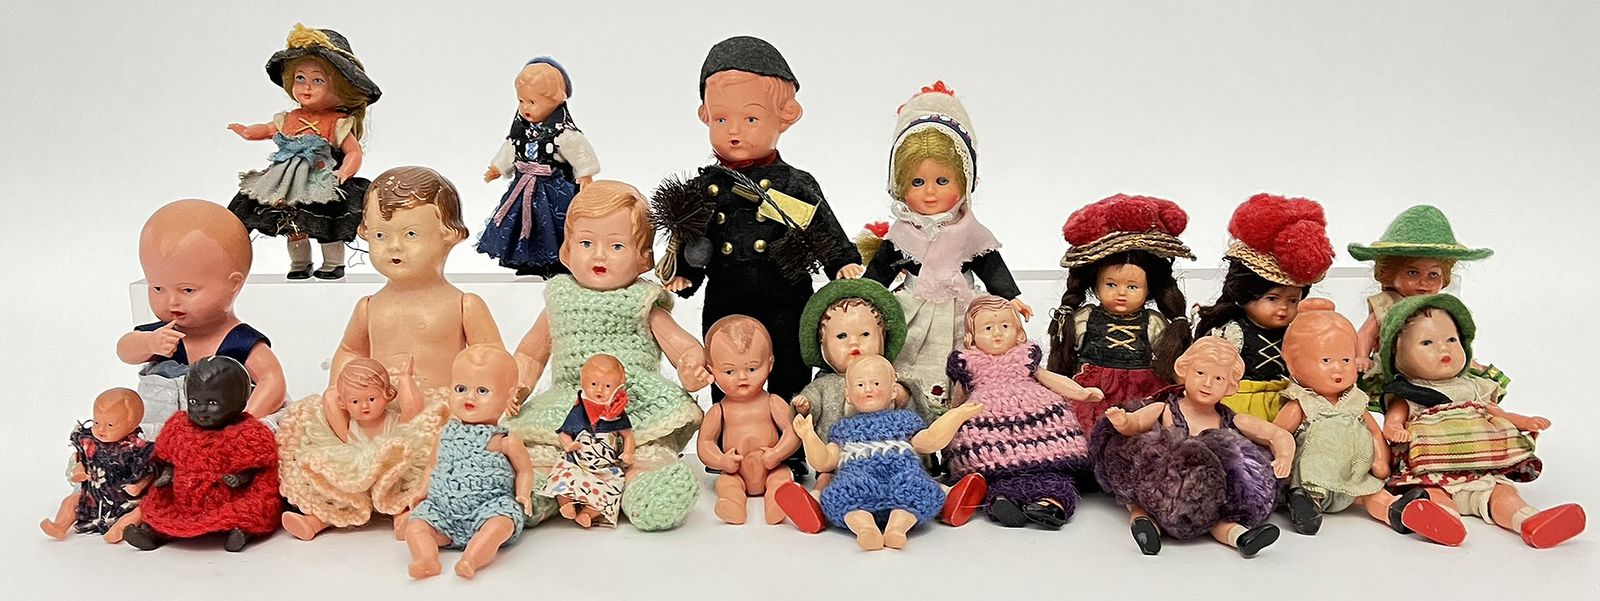 21 Puppen für die Puppenstube.